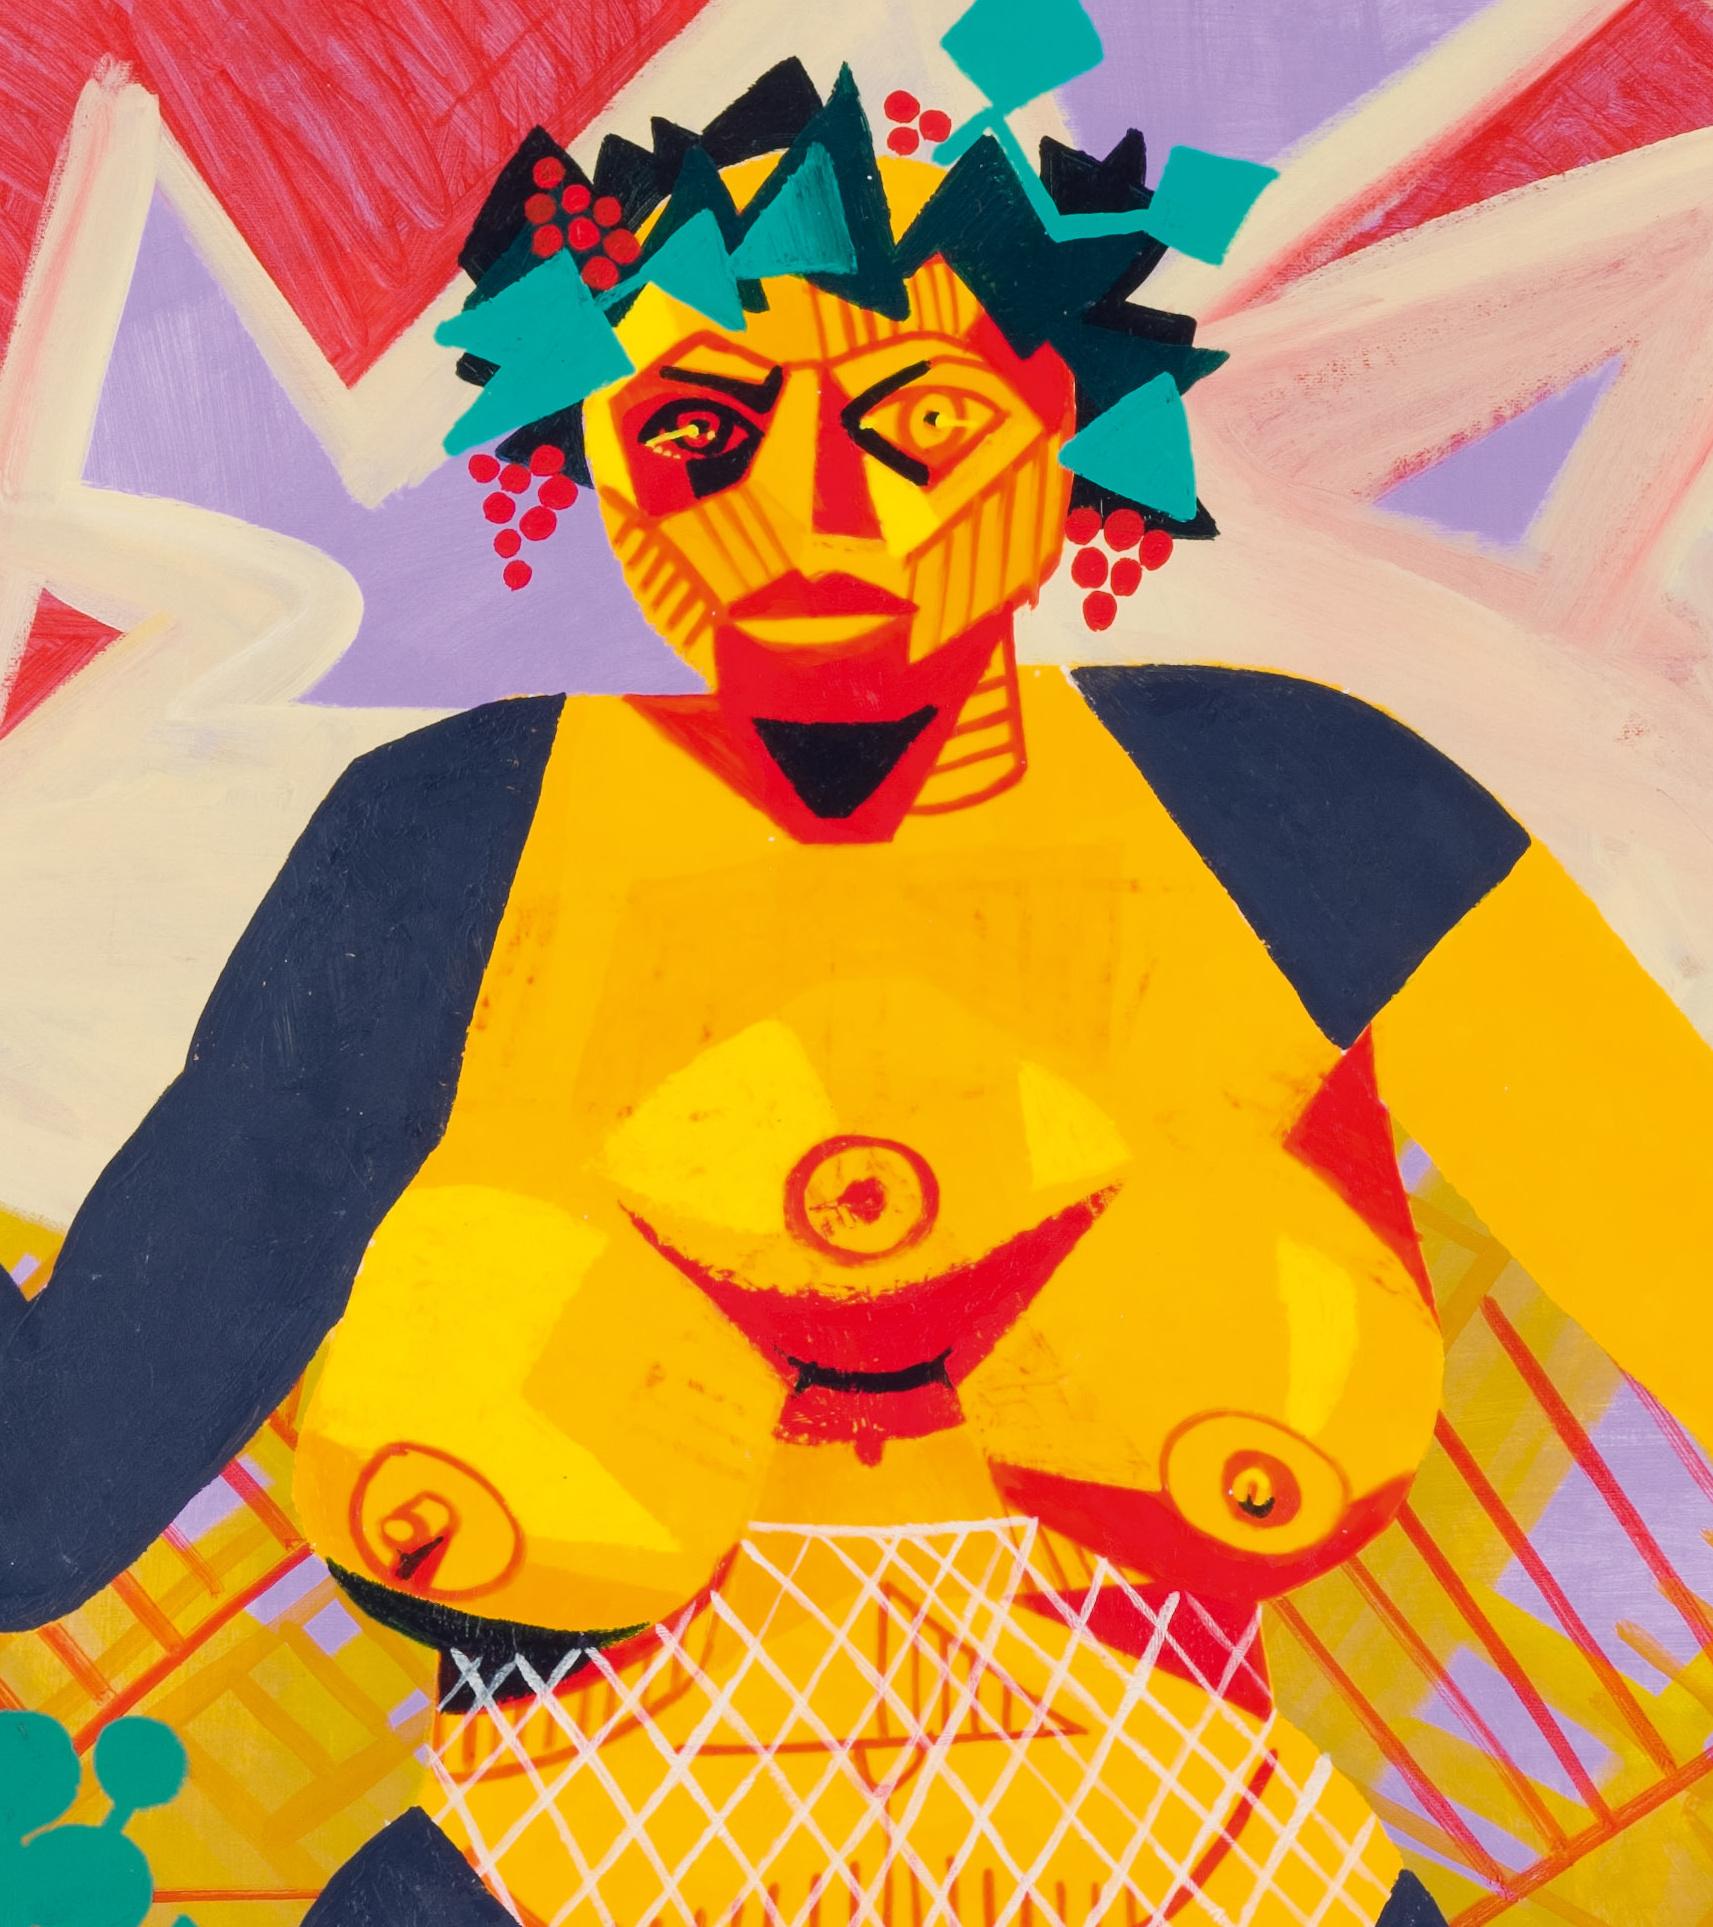 Self Portrait as a Super Ancient Goddess (autoportrait d'une déesse ancienne) - 21e siècle, jaune, vert, humain - Contemporain Painting par Alexandru Rădvan